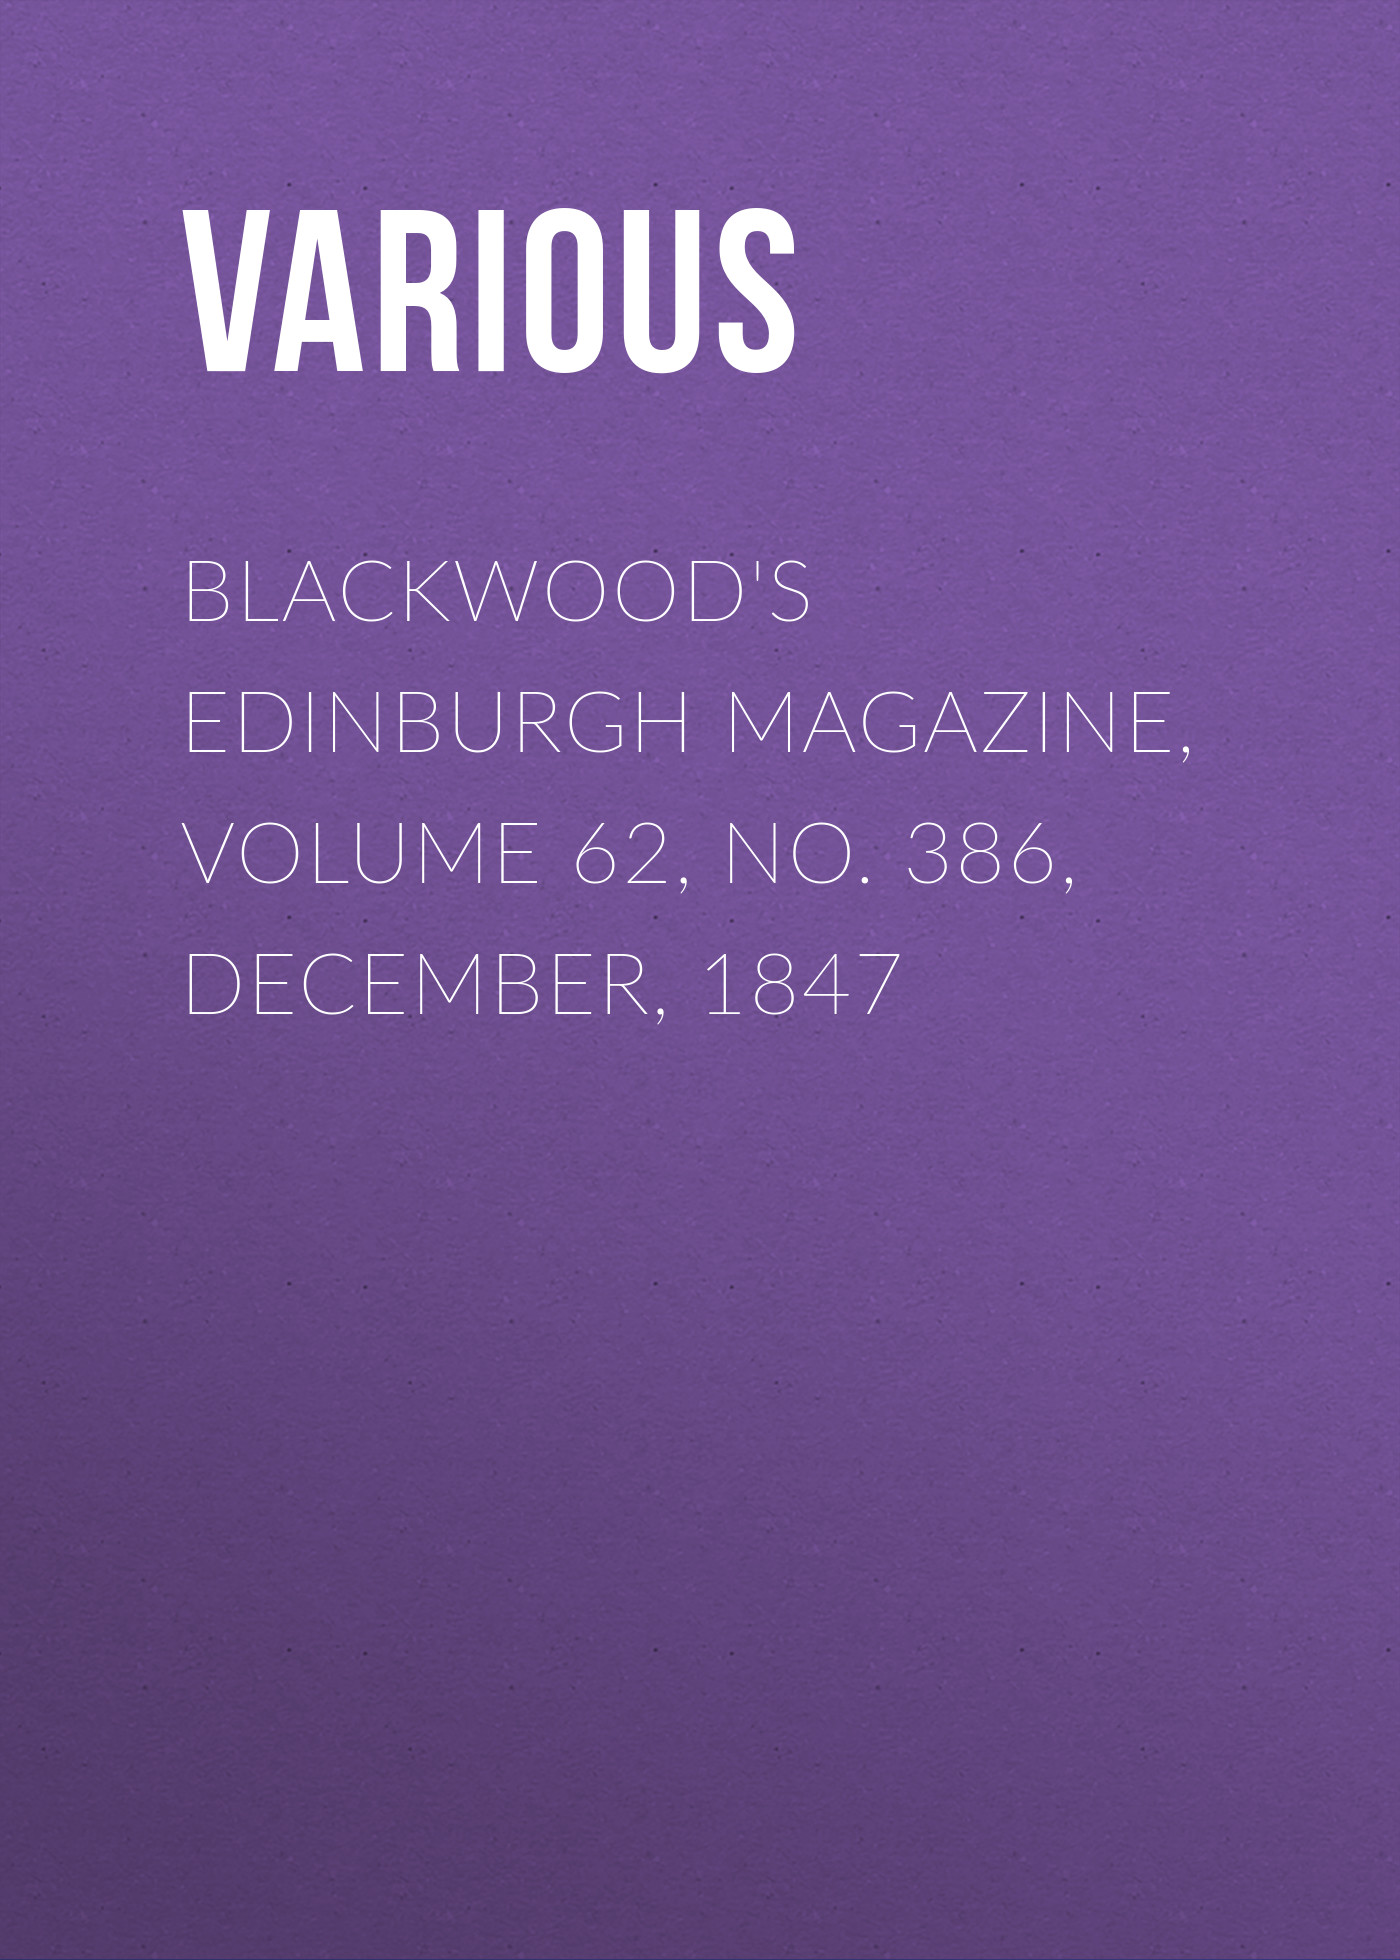 Книга Blackwood's Edinburgh Magazine, Volume 62, No. 386, December, 1847 из серии , созданная  Various, может относится к жанру Журналы, Зарубежная образовательная литература, Книги о Путешествиях. Стоимость электронной книги Blackwood's Edinburgh Magazine, Volume 62, No. 386, December, 1847 с идентификатором 25569607 составляет 0 руб.